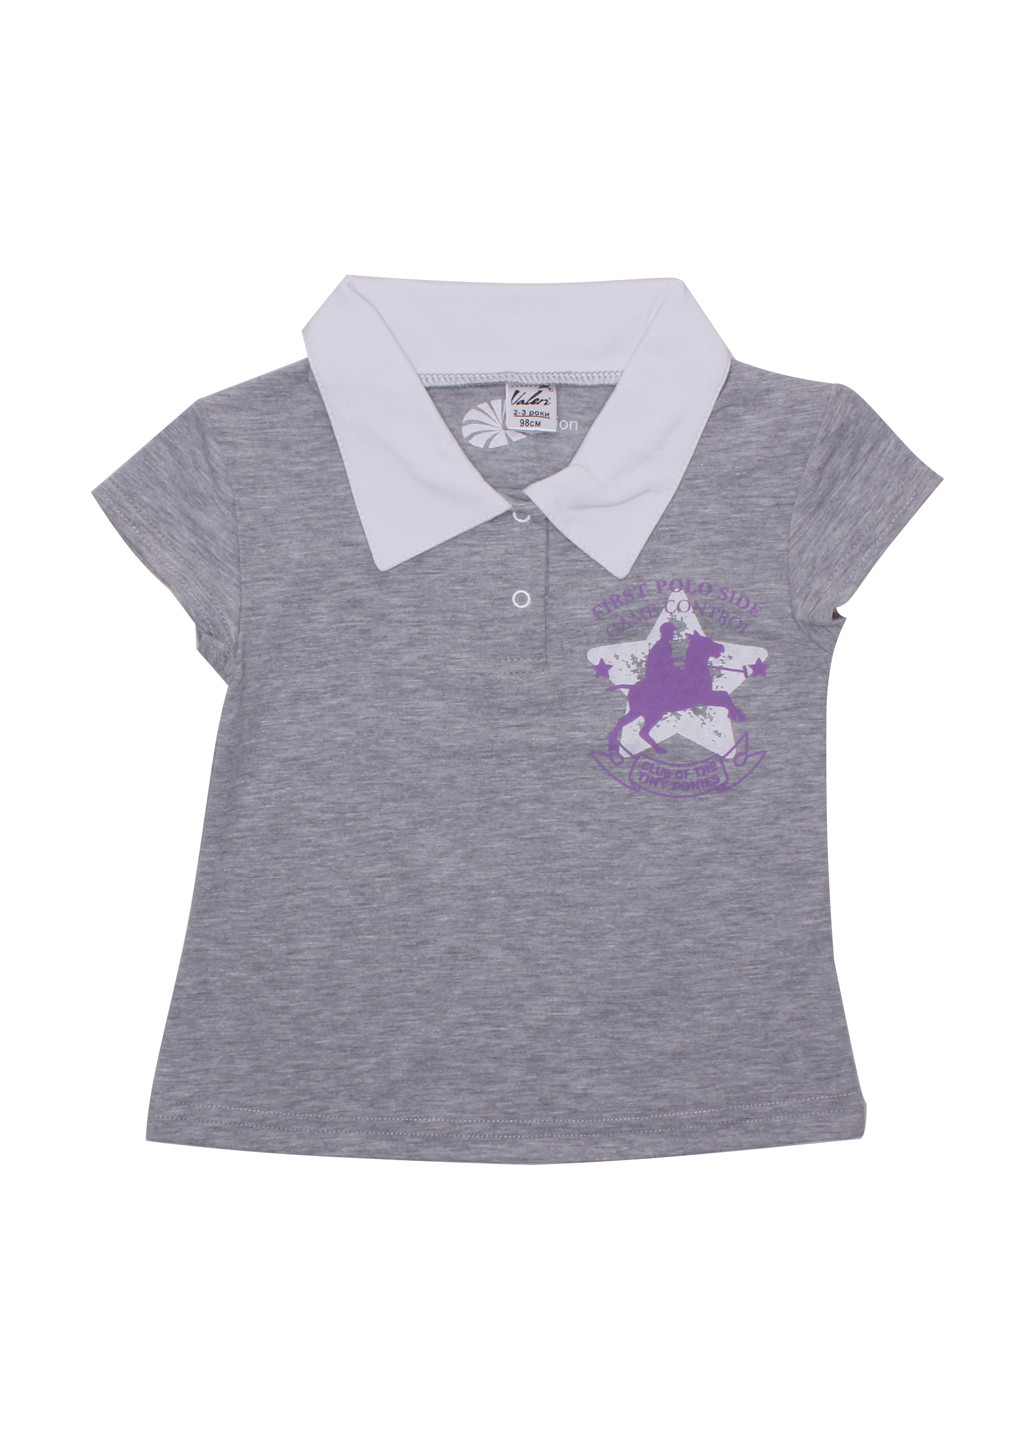 Серая детская футболка-поло для девочки Валери-Текс с рисунком